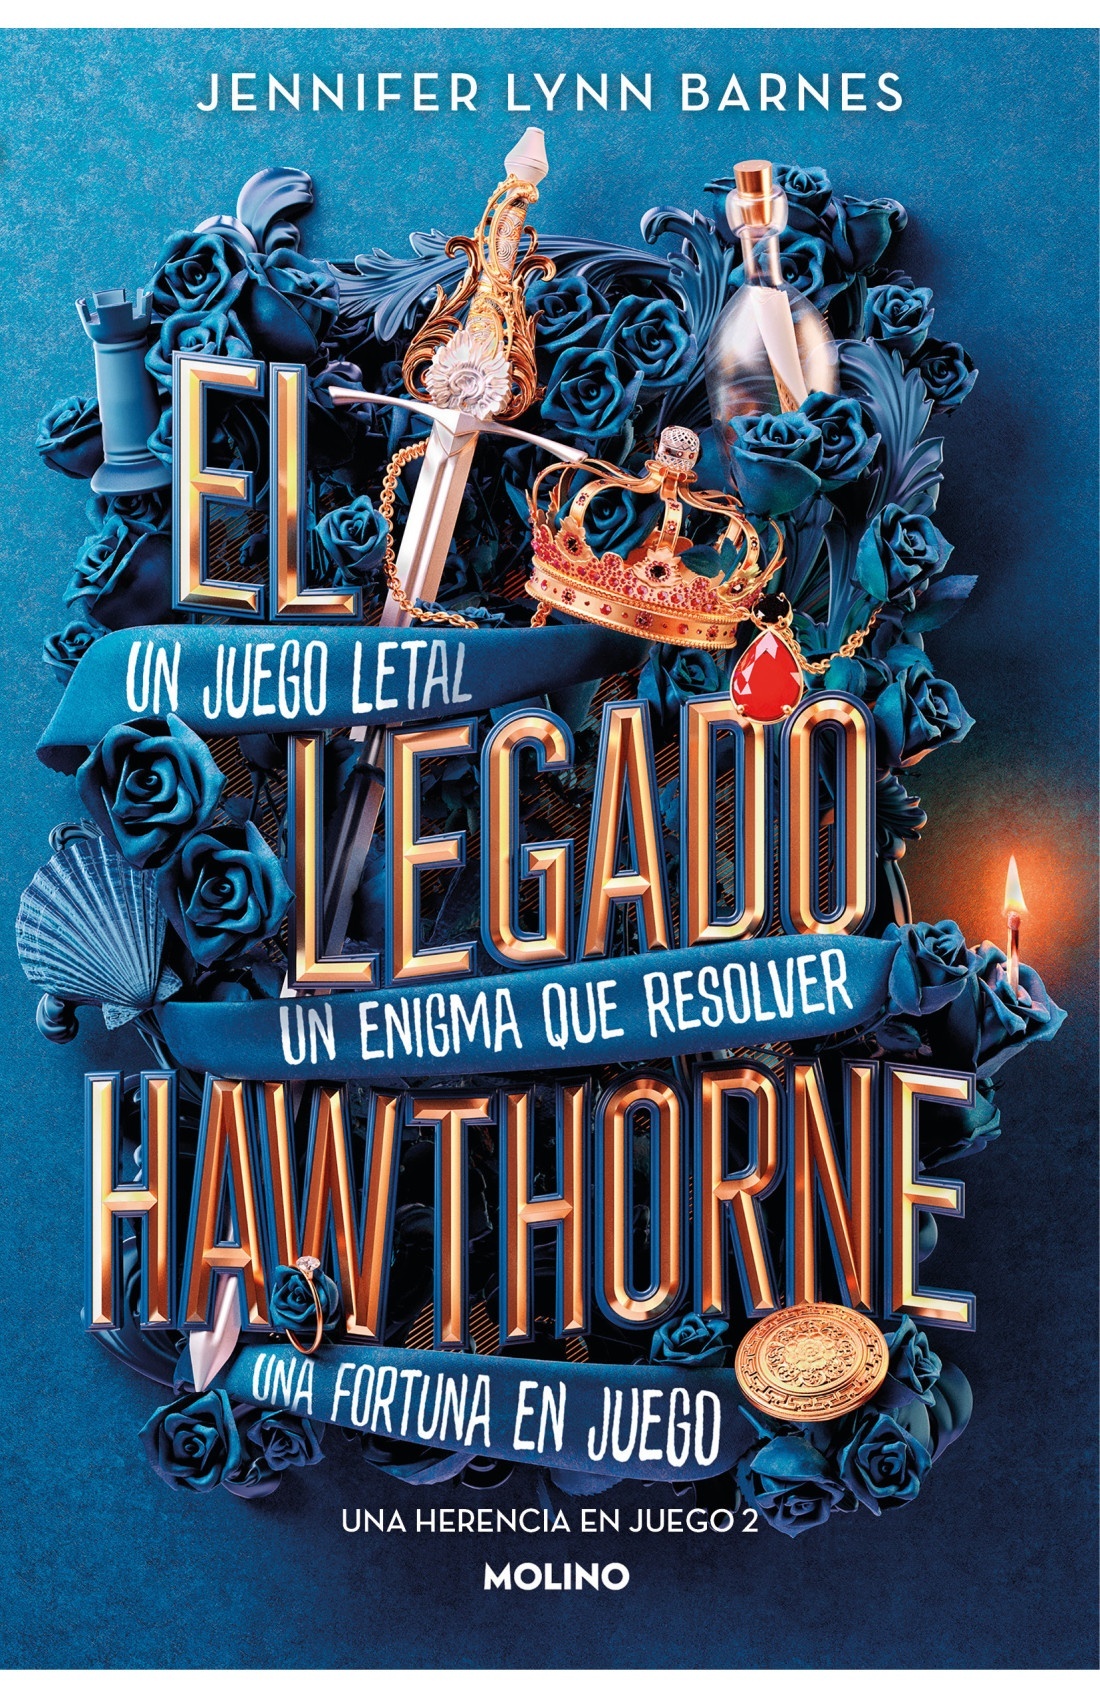 Legado hawthorne, El "Una herencia en juego 2". 